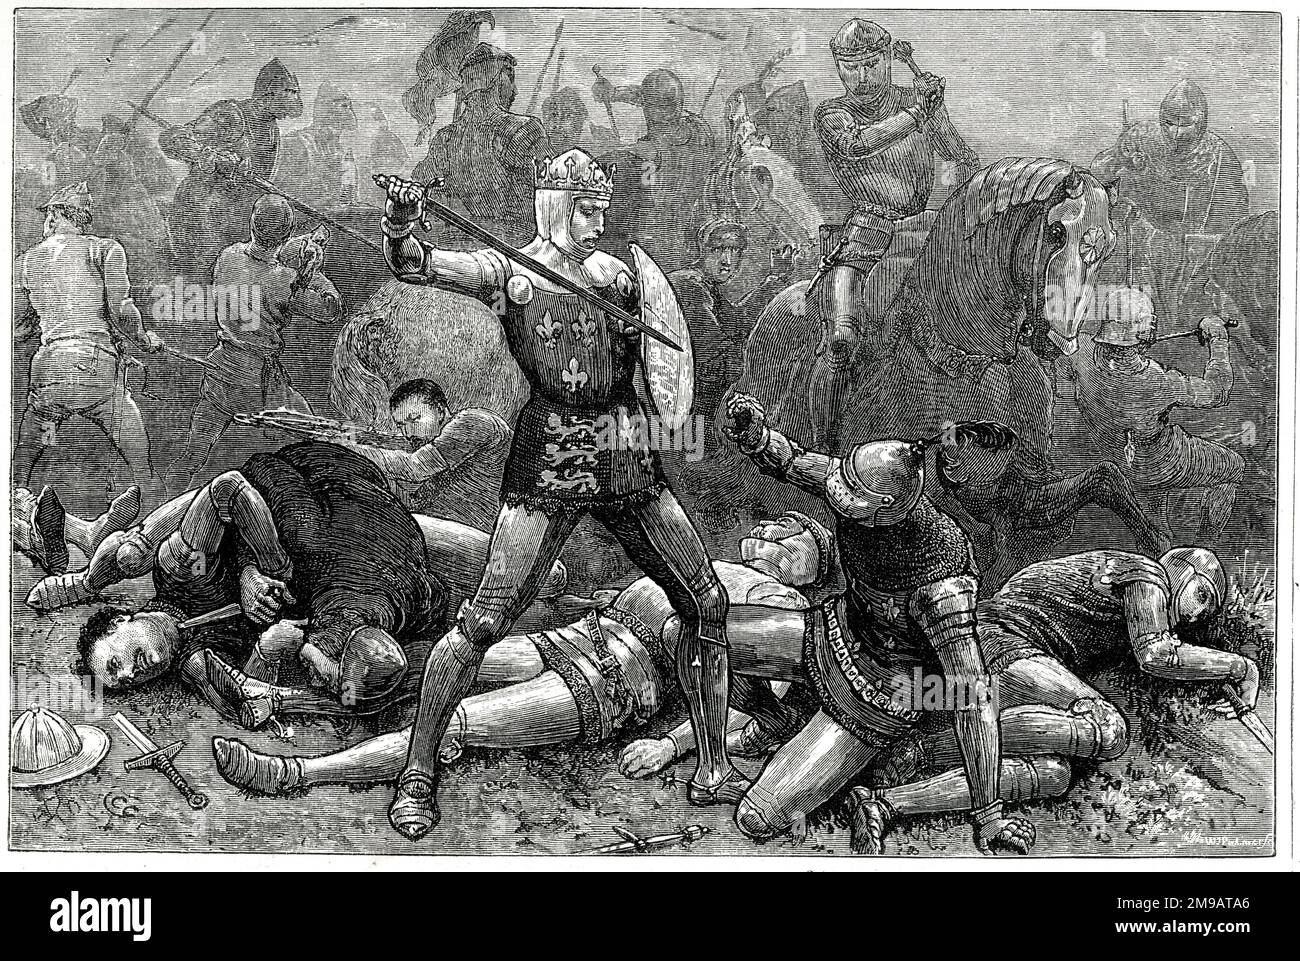 El rey Enrique V y el duque de Alencon en la batalla de Agincourt, el 25 de octubre de 1415, parte de la Guerra de los Cien Años (1337-1453). Juan I de Alencon fue asesinado en la batalla. Foto de stock